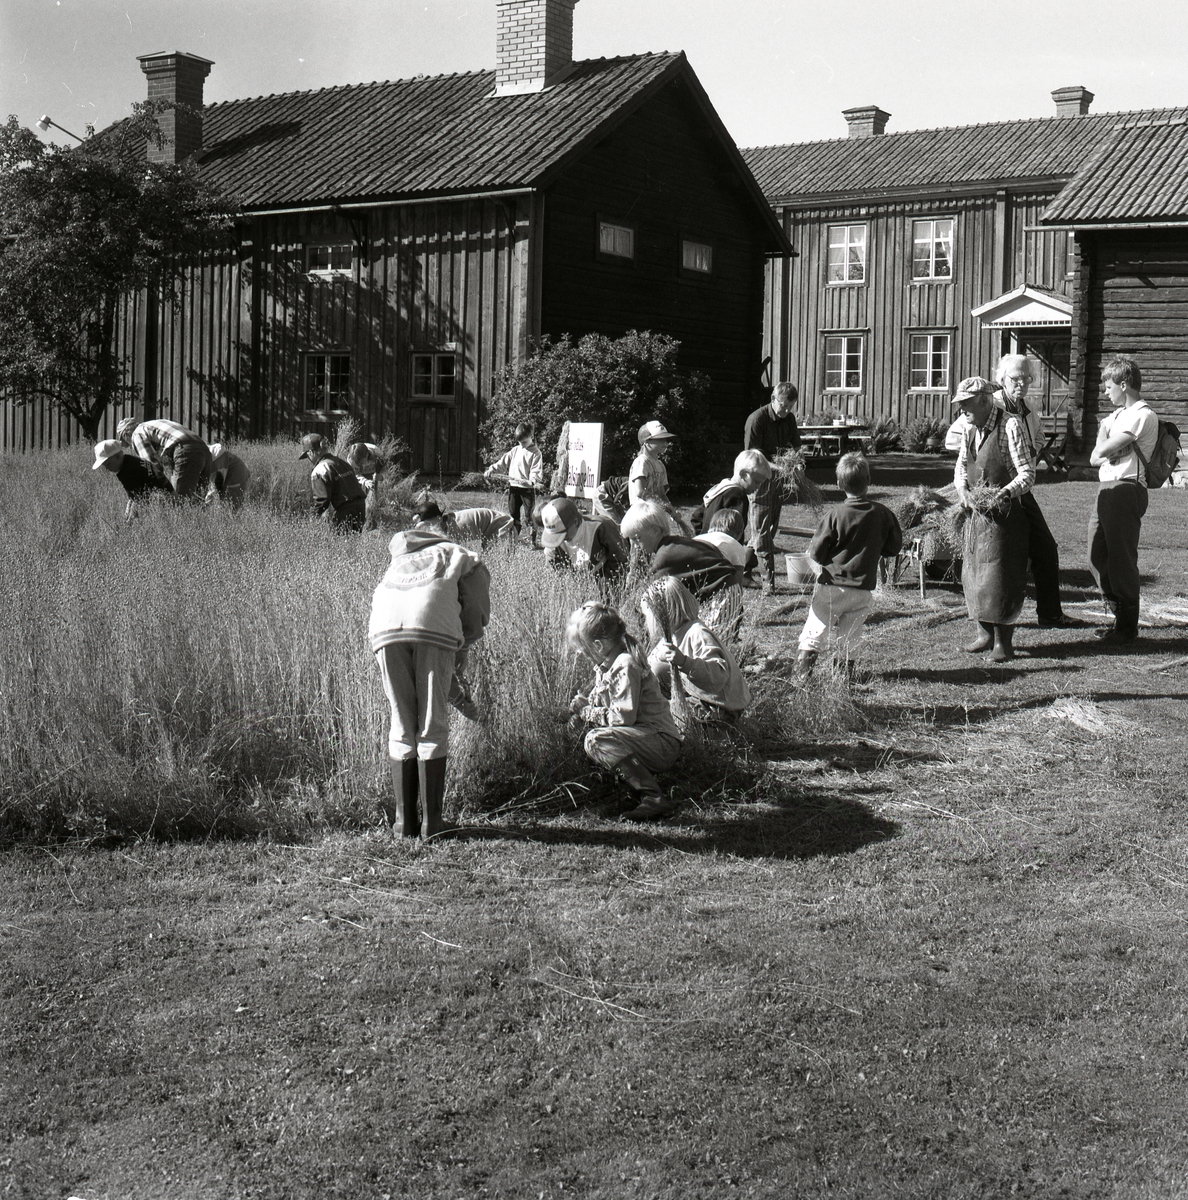 Ute på gården är det några män och en skolklass som plockar lin. Det är timrade byggnader där med fönster, gardiner, tak, skorstenar och dörr med tak ovanför. På gården finns det gräs, lin, buskar och träd. Skol lindag 22 augusti 1990.